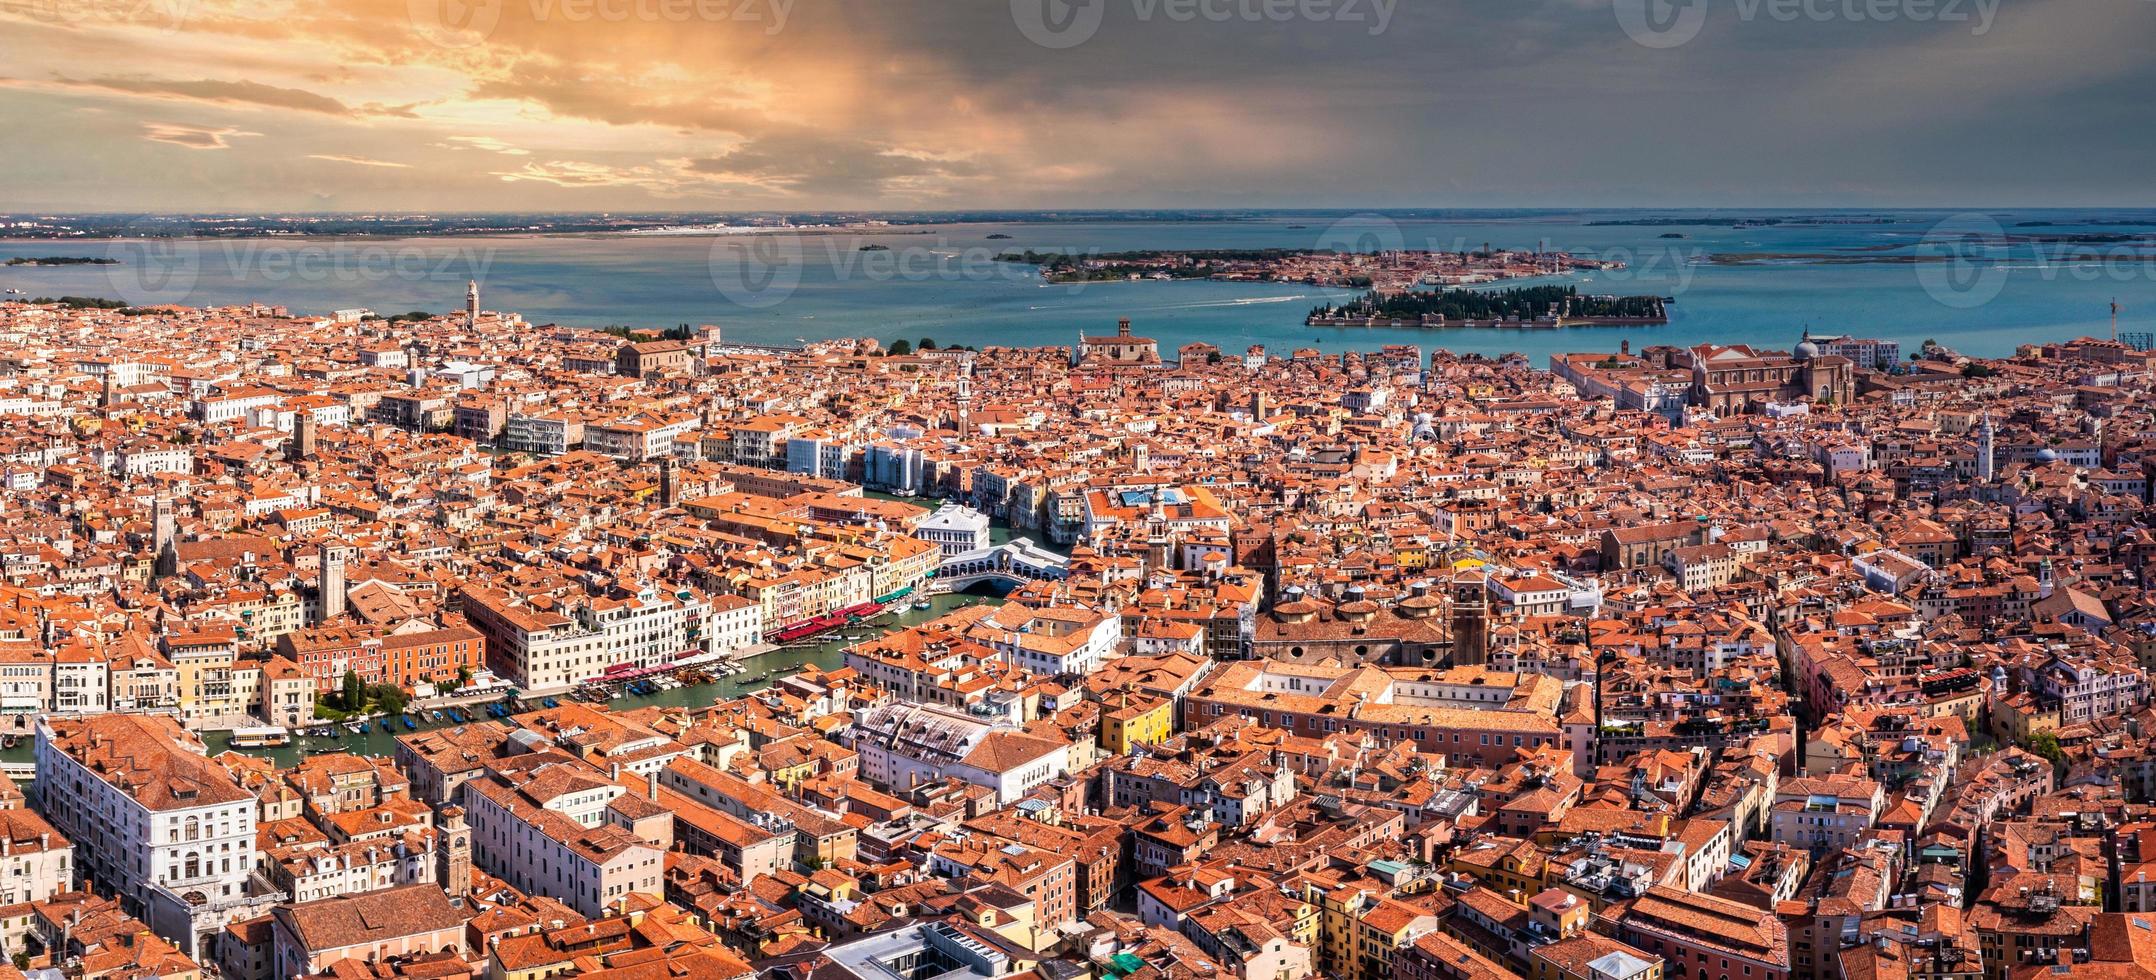 vista aérea de venecia cerca de la plaza de san marcos foto